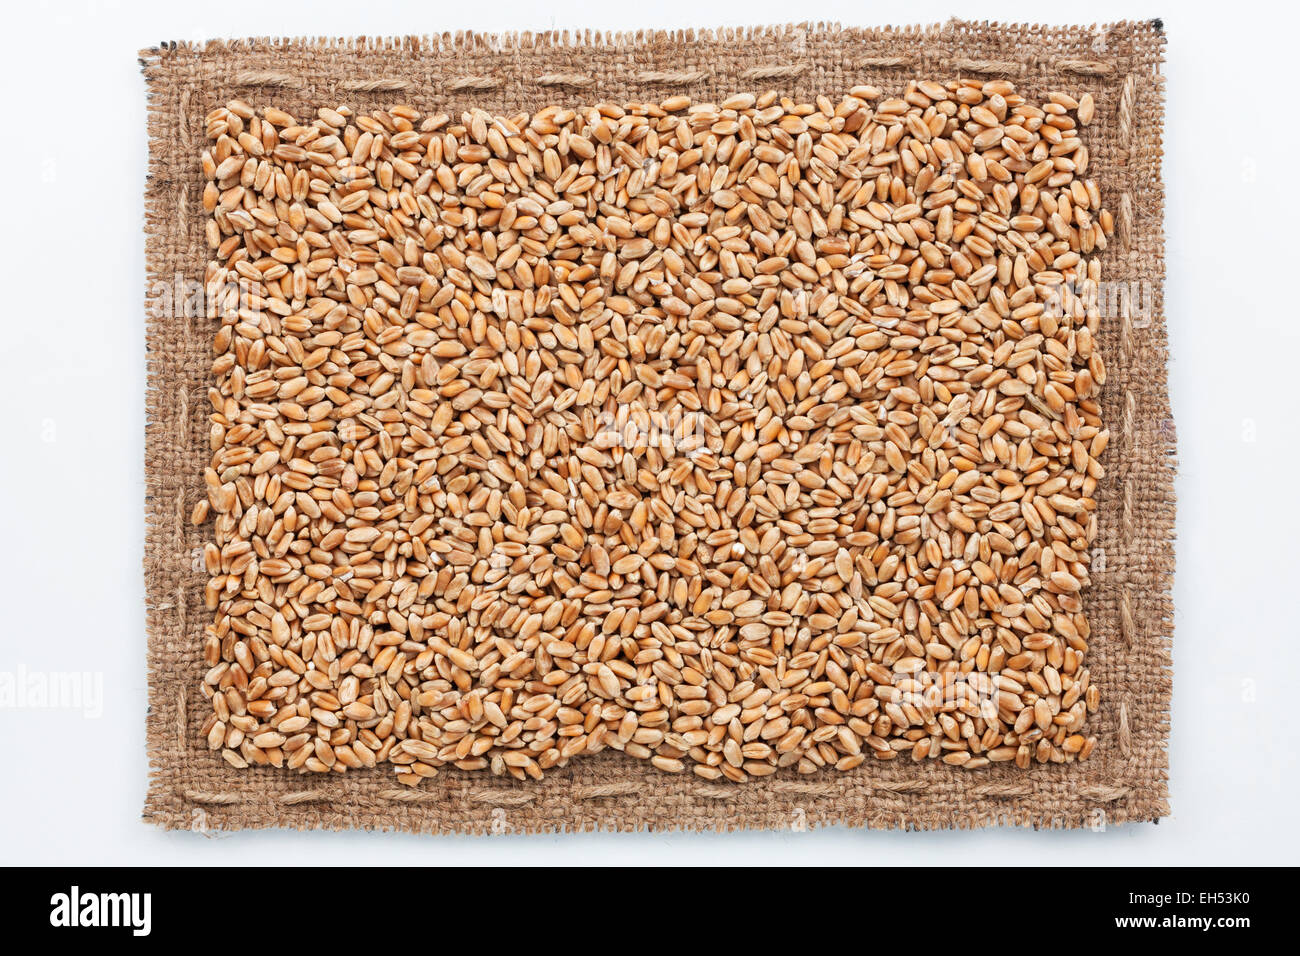 Rahmen aus Sackleinen und Weizen Korn, liegend auf einem weißen Hintergrund Stockfoto